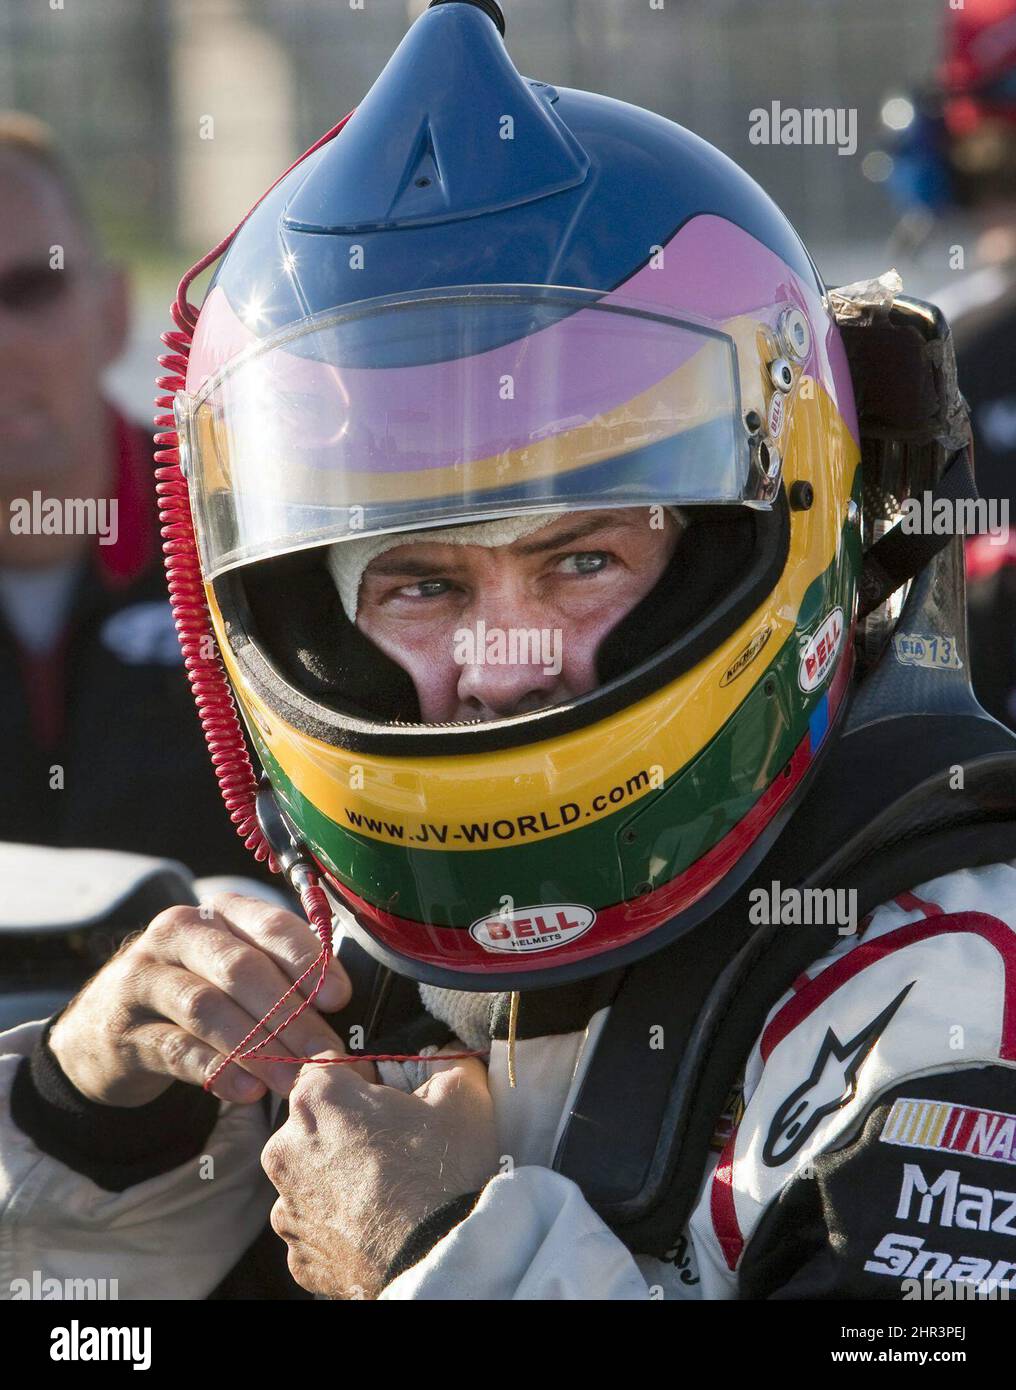 Jacques Villeneuve, pilote de Penske Racing, s'attache sur son casque avant  de se rendre à la séance de qualification pour la course nationale NASCAR  Napa Auto Parts 200 le vendredi 19 août